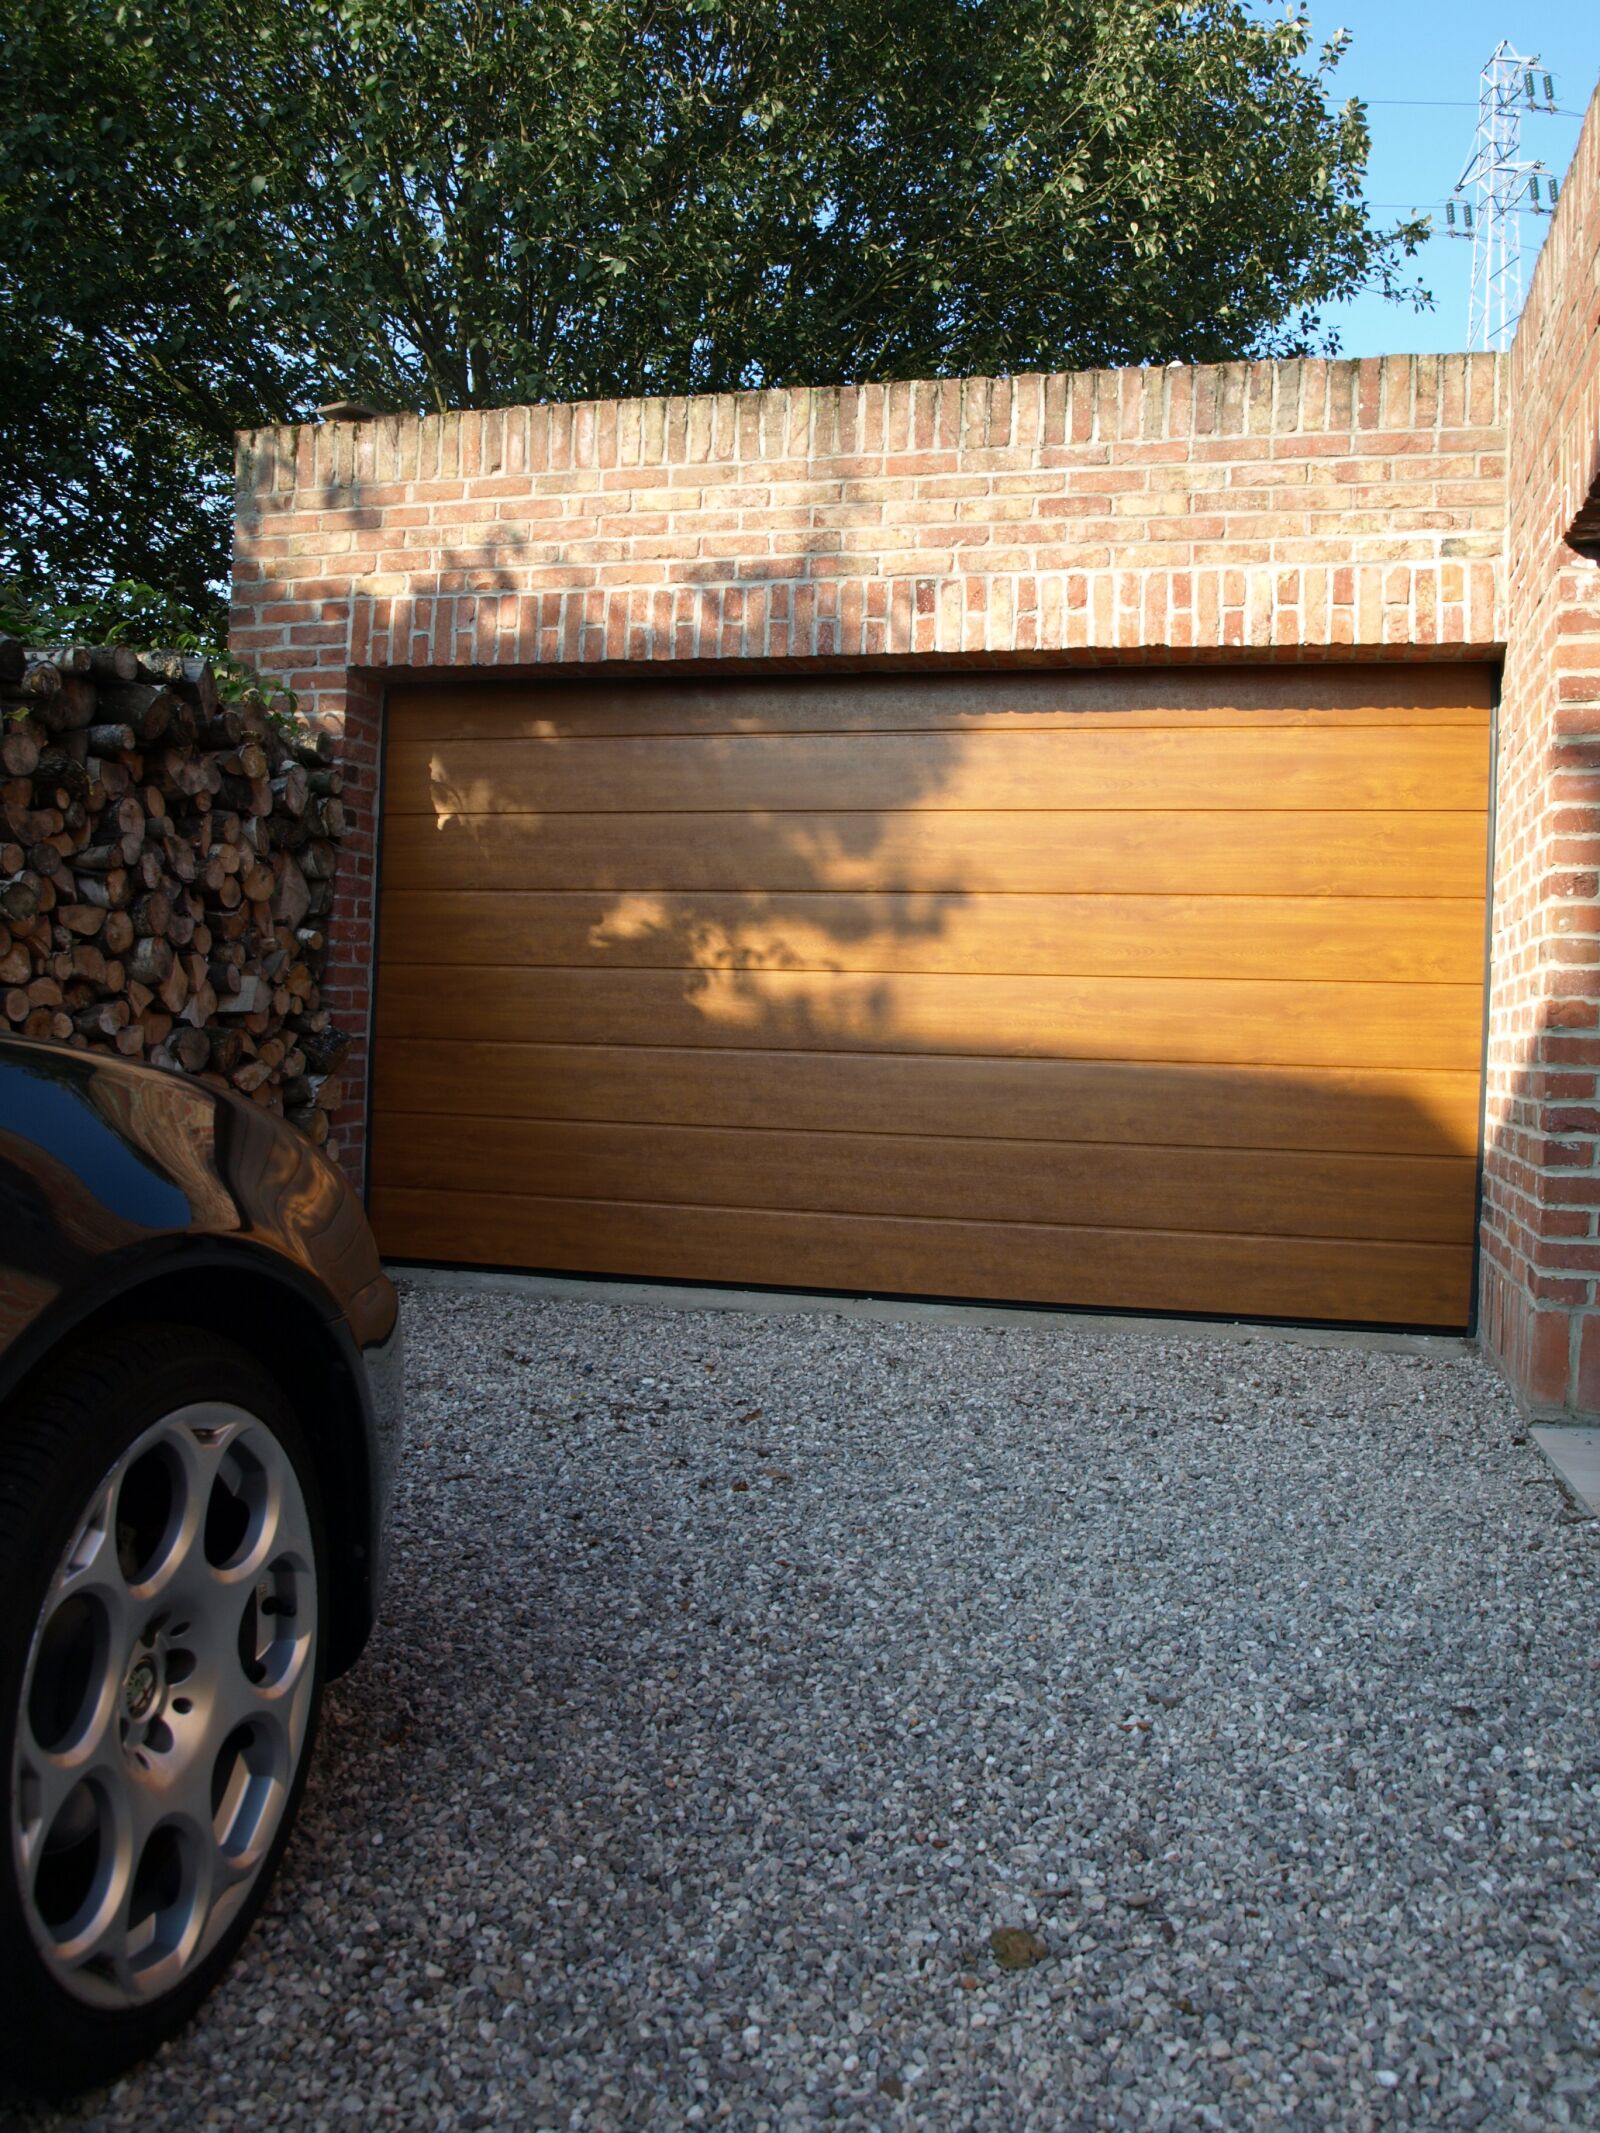 Olympus E-410 (EVOLT E-410) sample photo. Garage door, golden oak photography